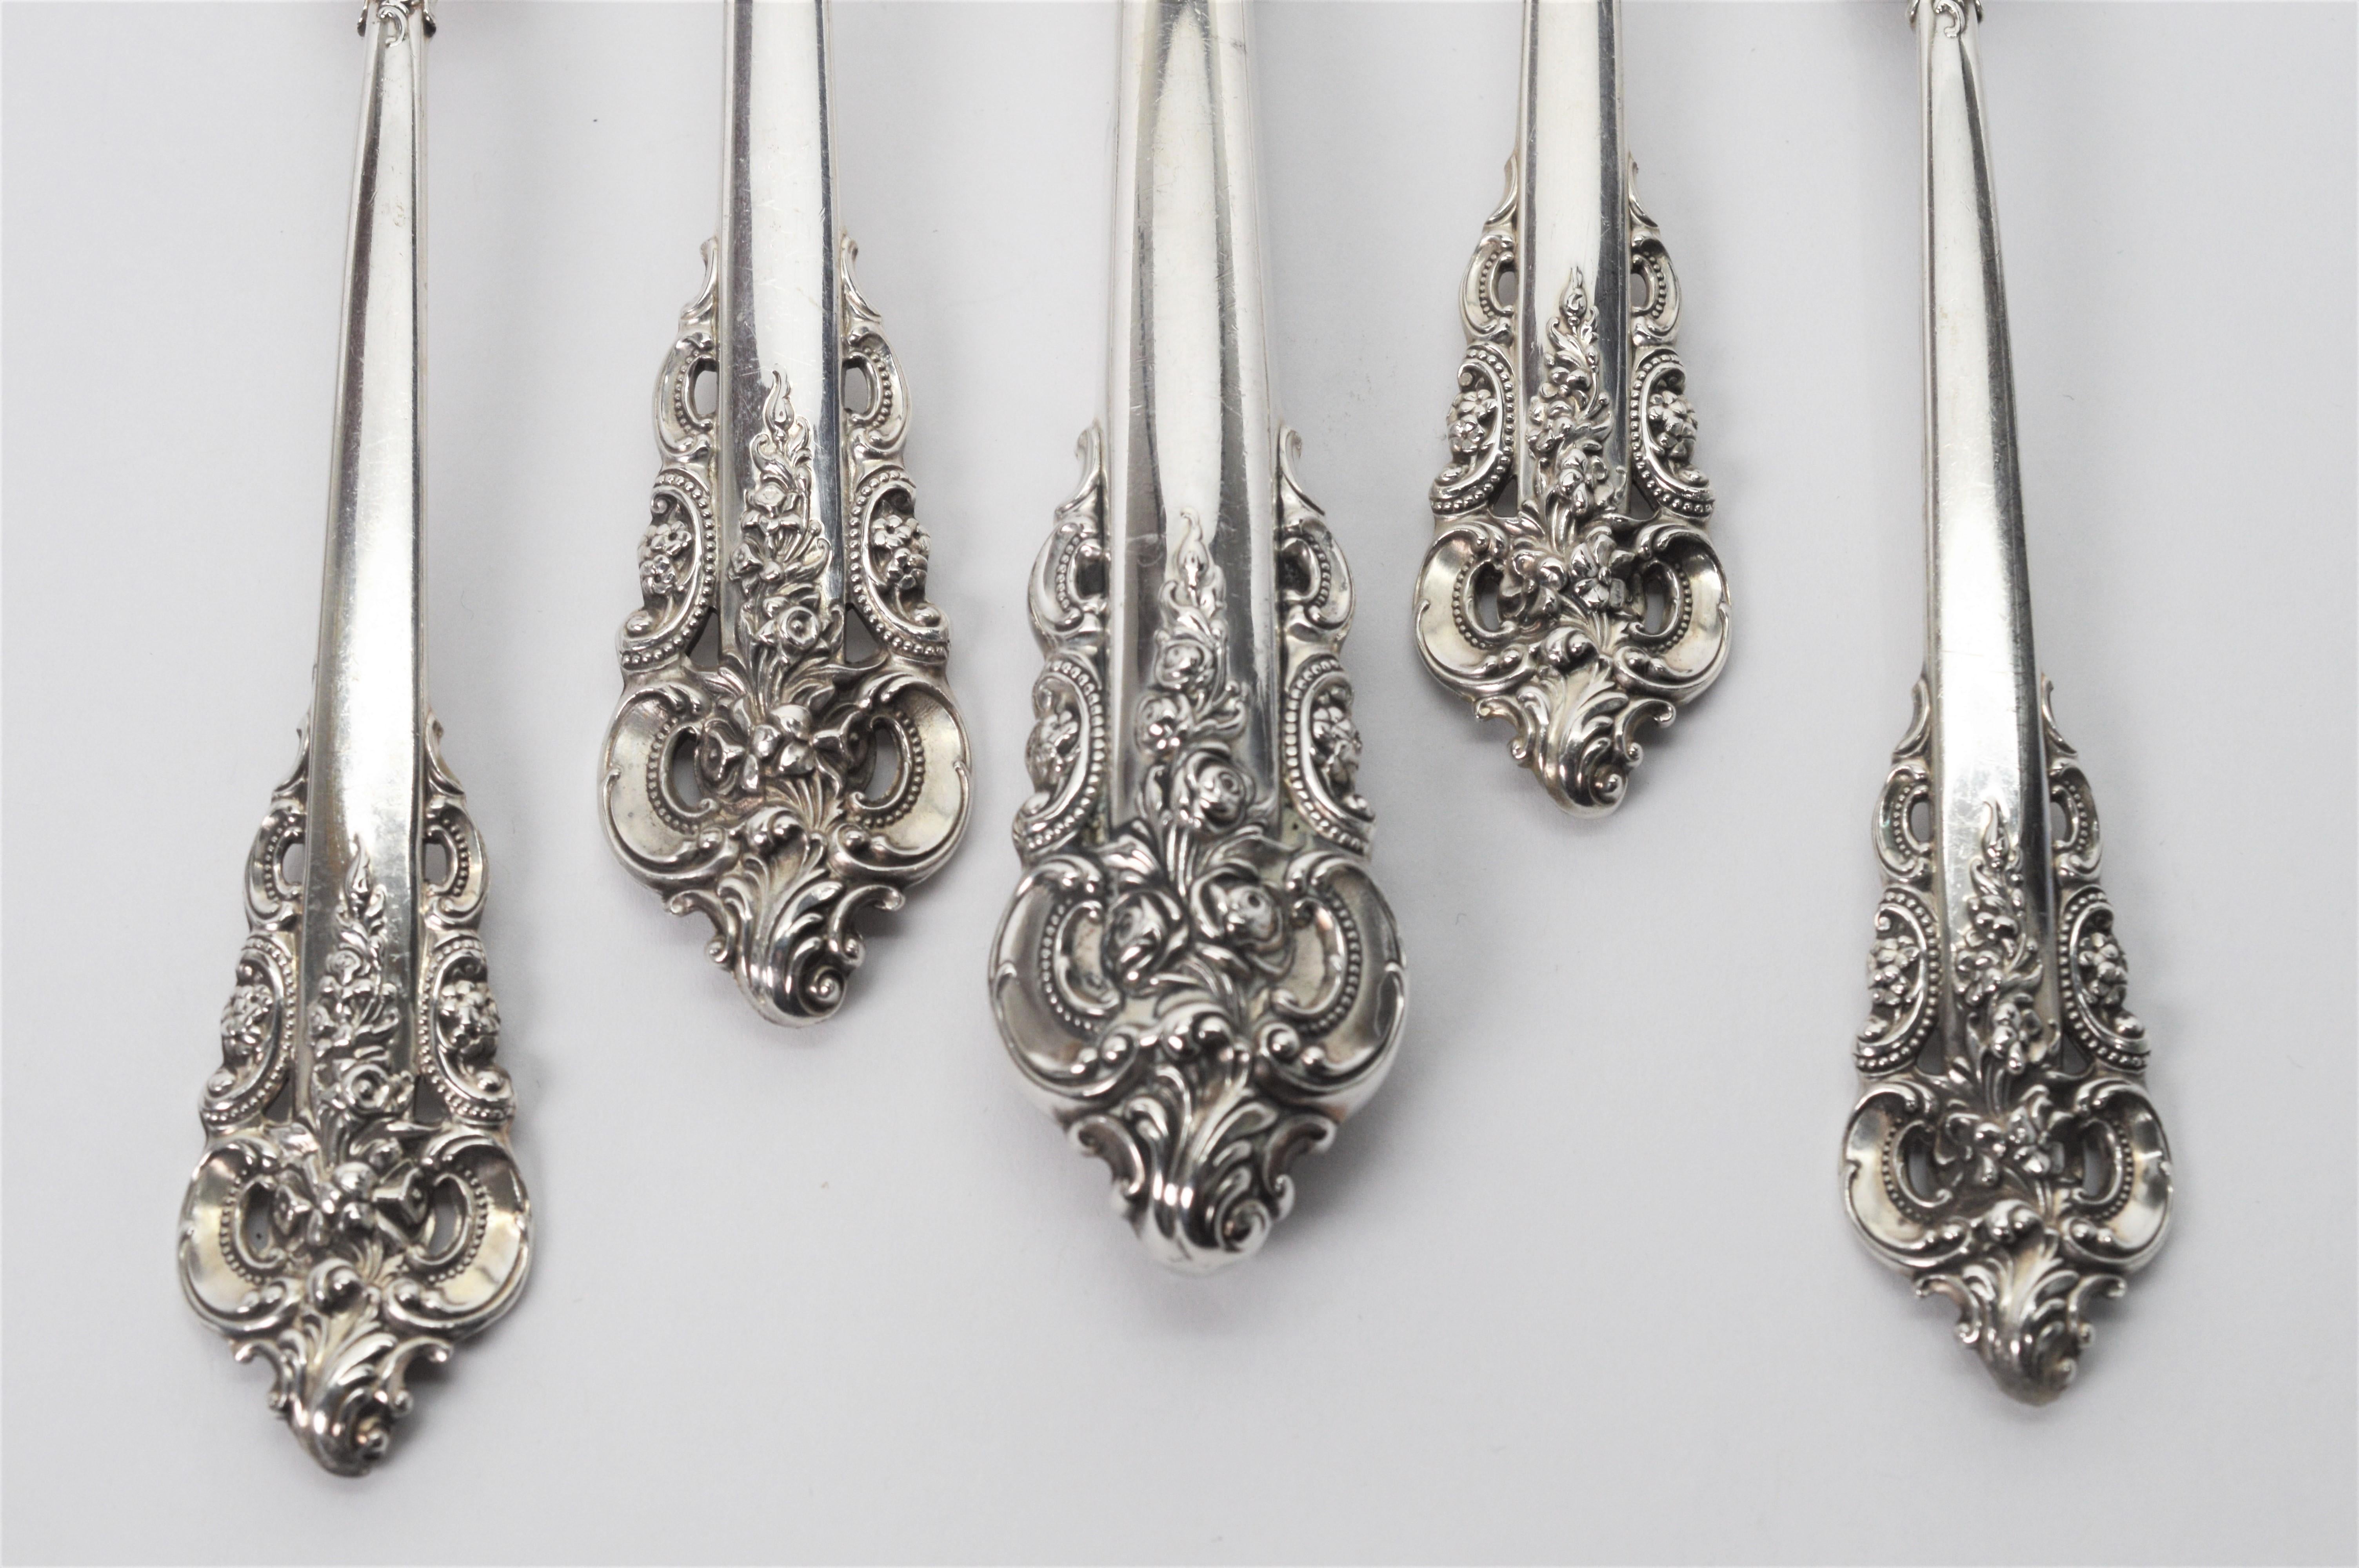 grand baroque silverware